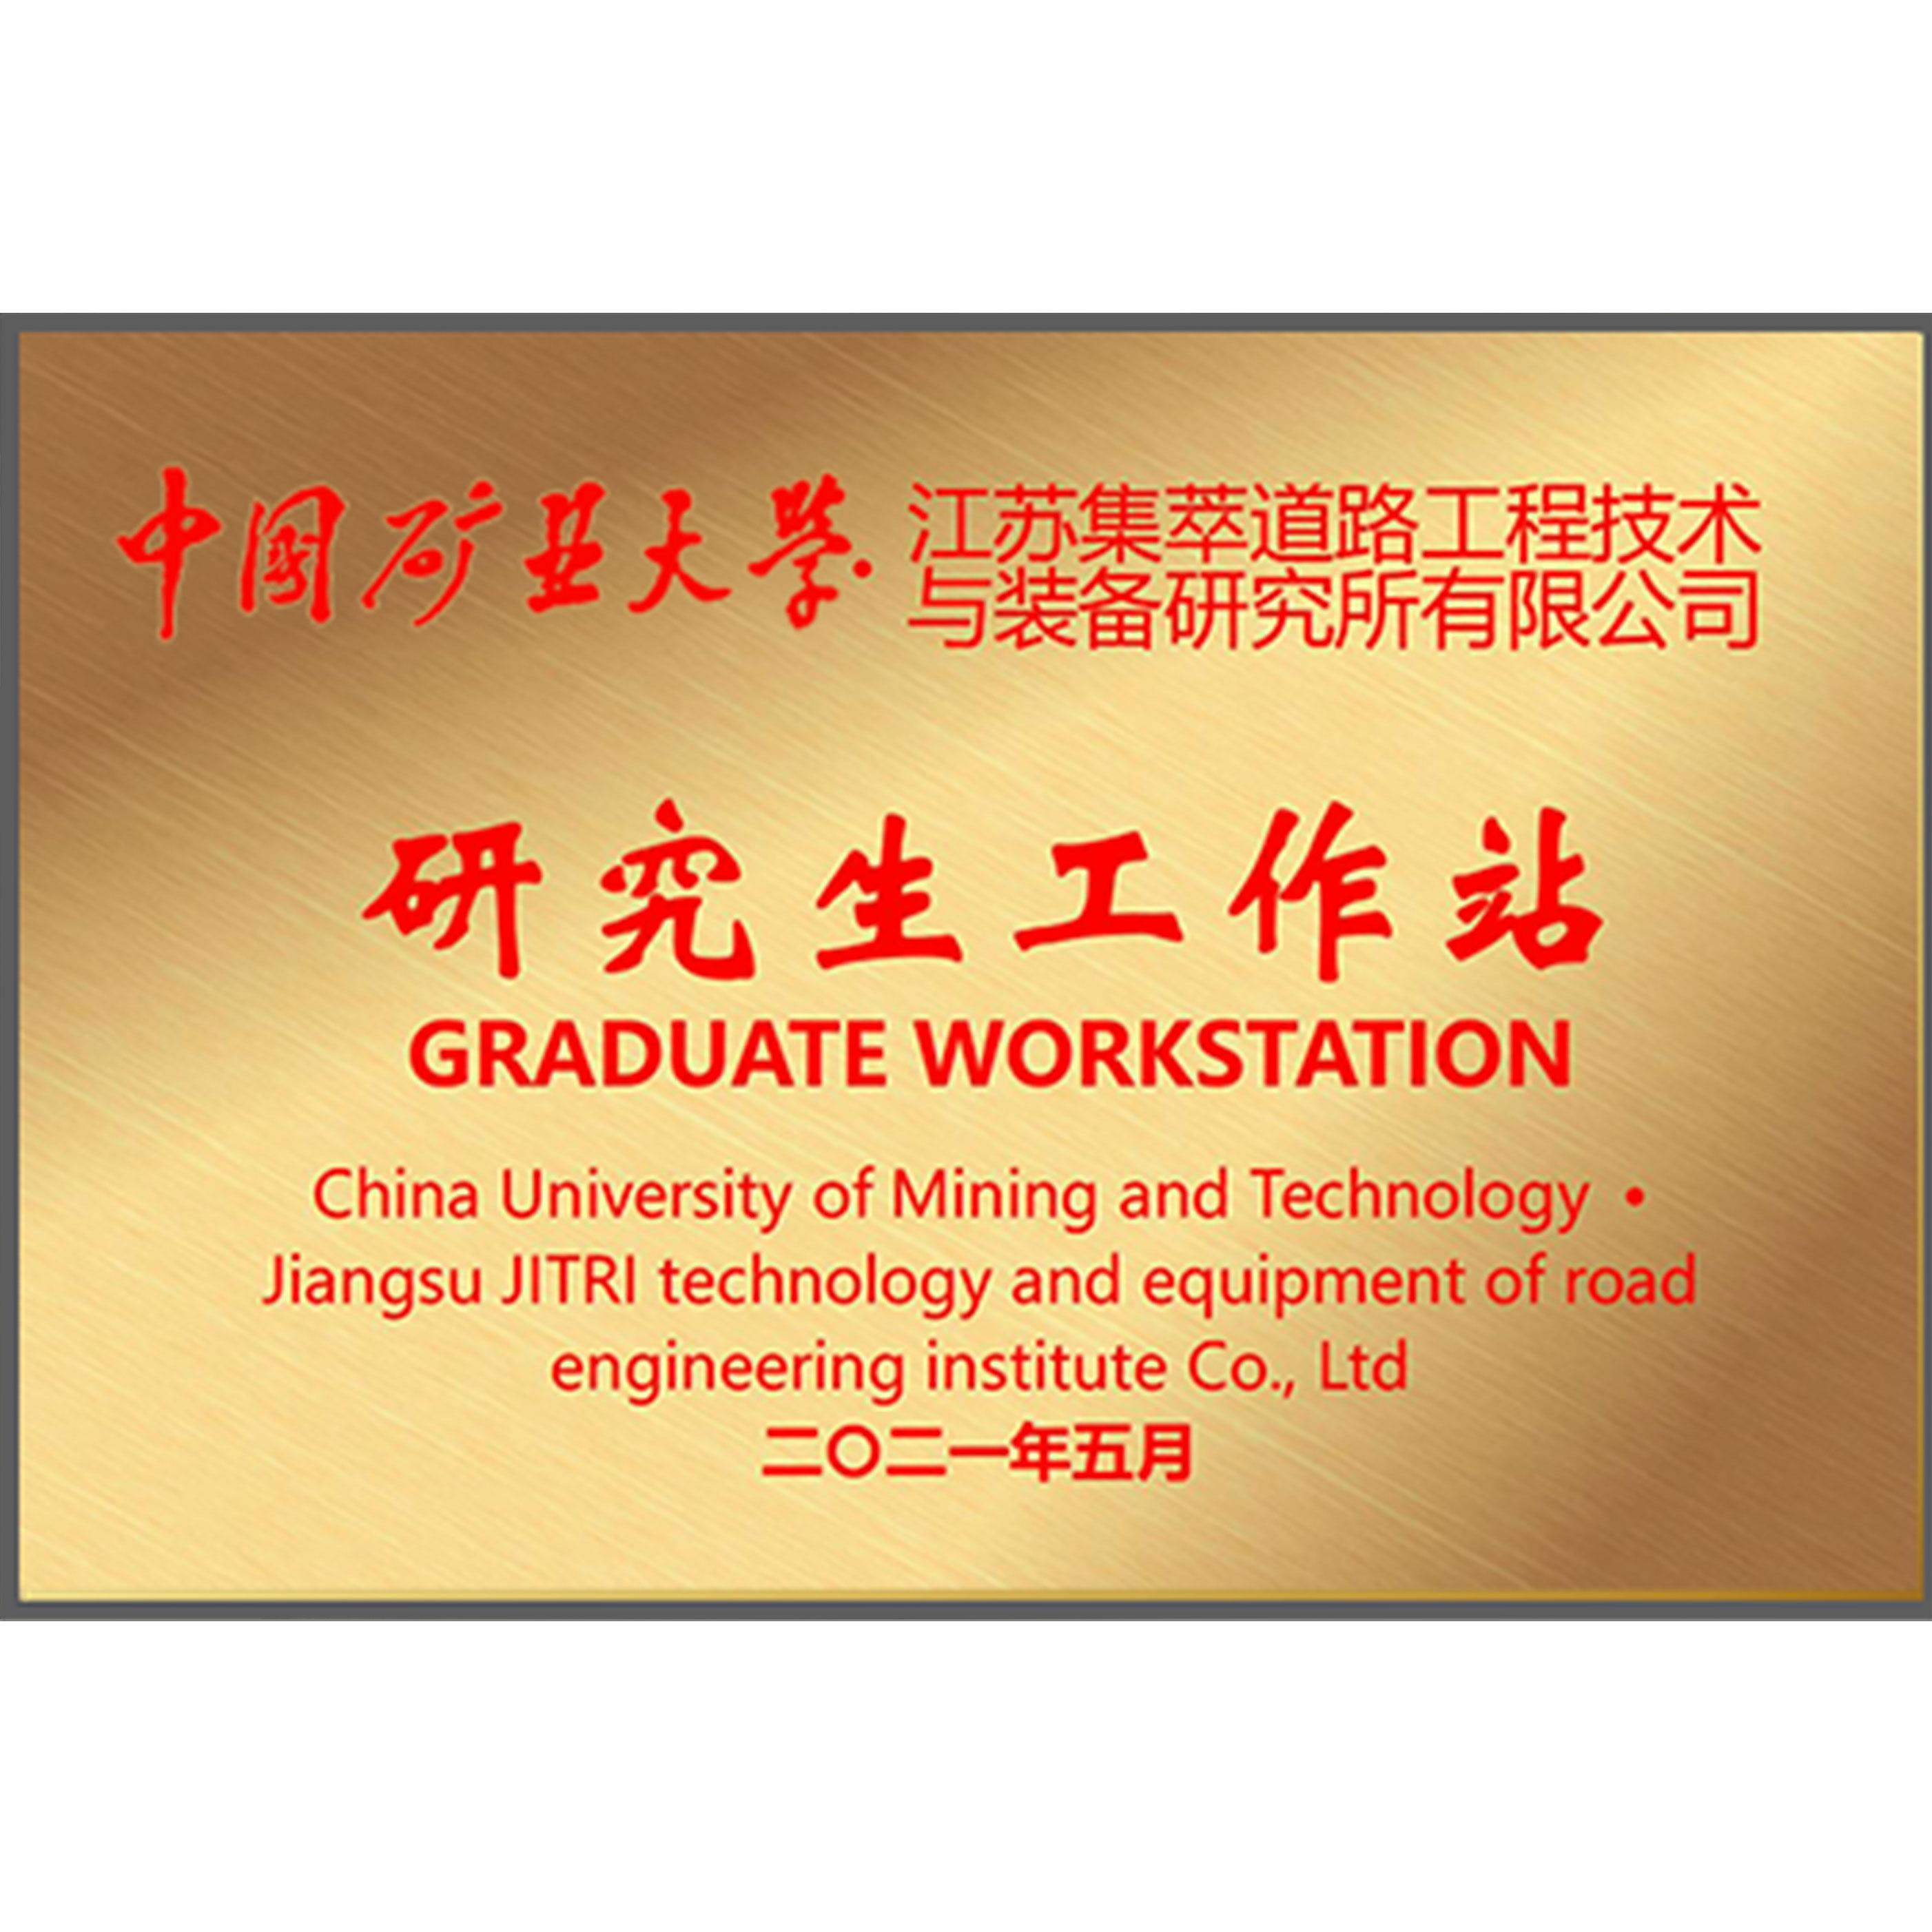 中国矿业大学研究生工作站